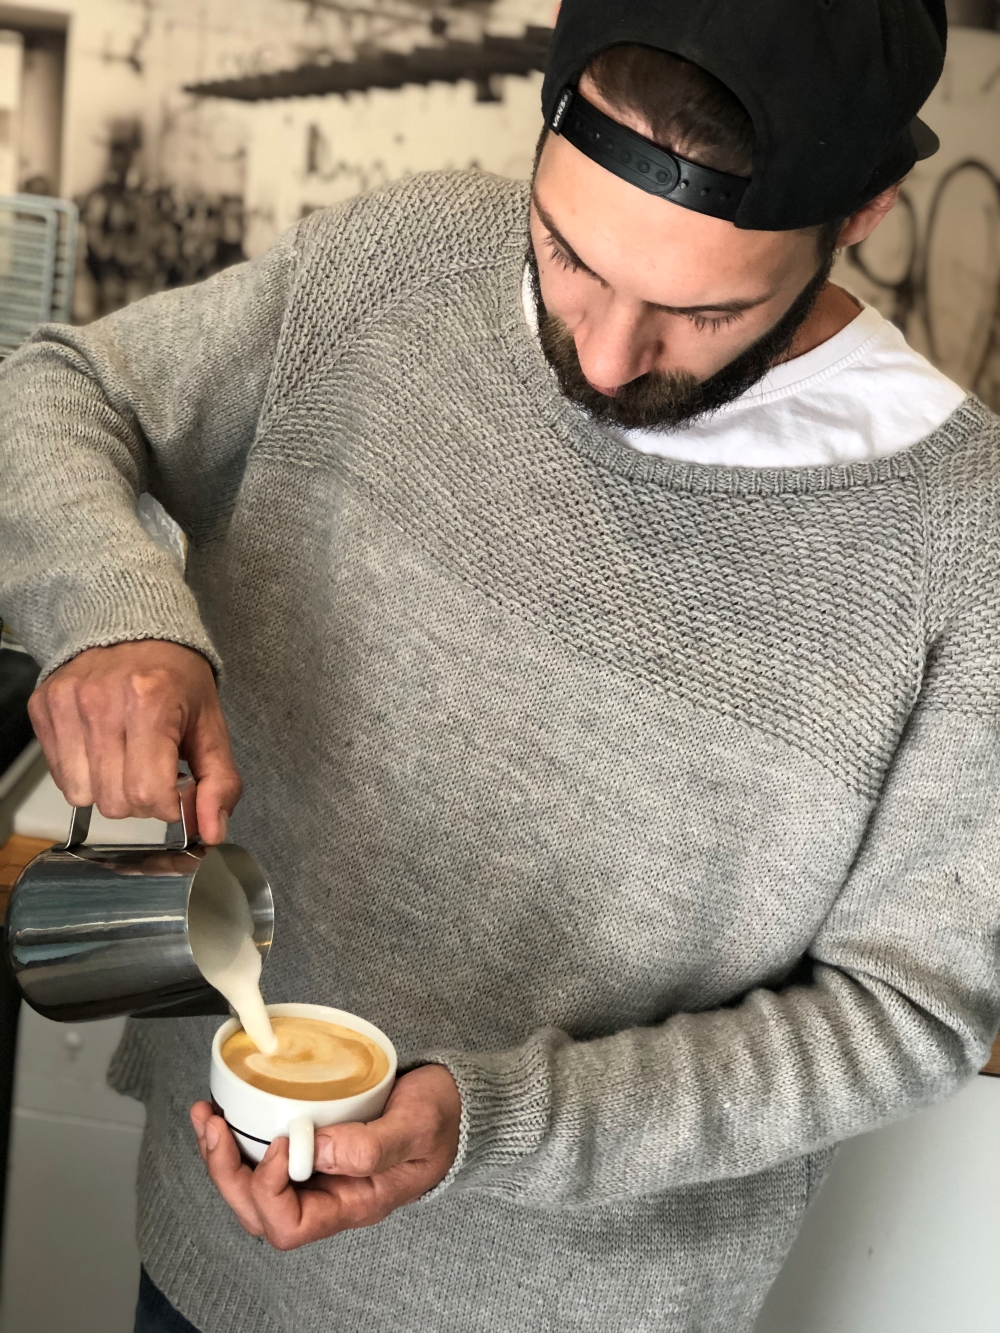 Ein Mann in einem mélange-grauen Strickpullover bereitet einen Kaffee zu.